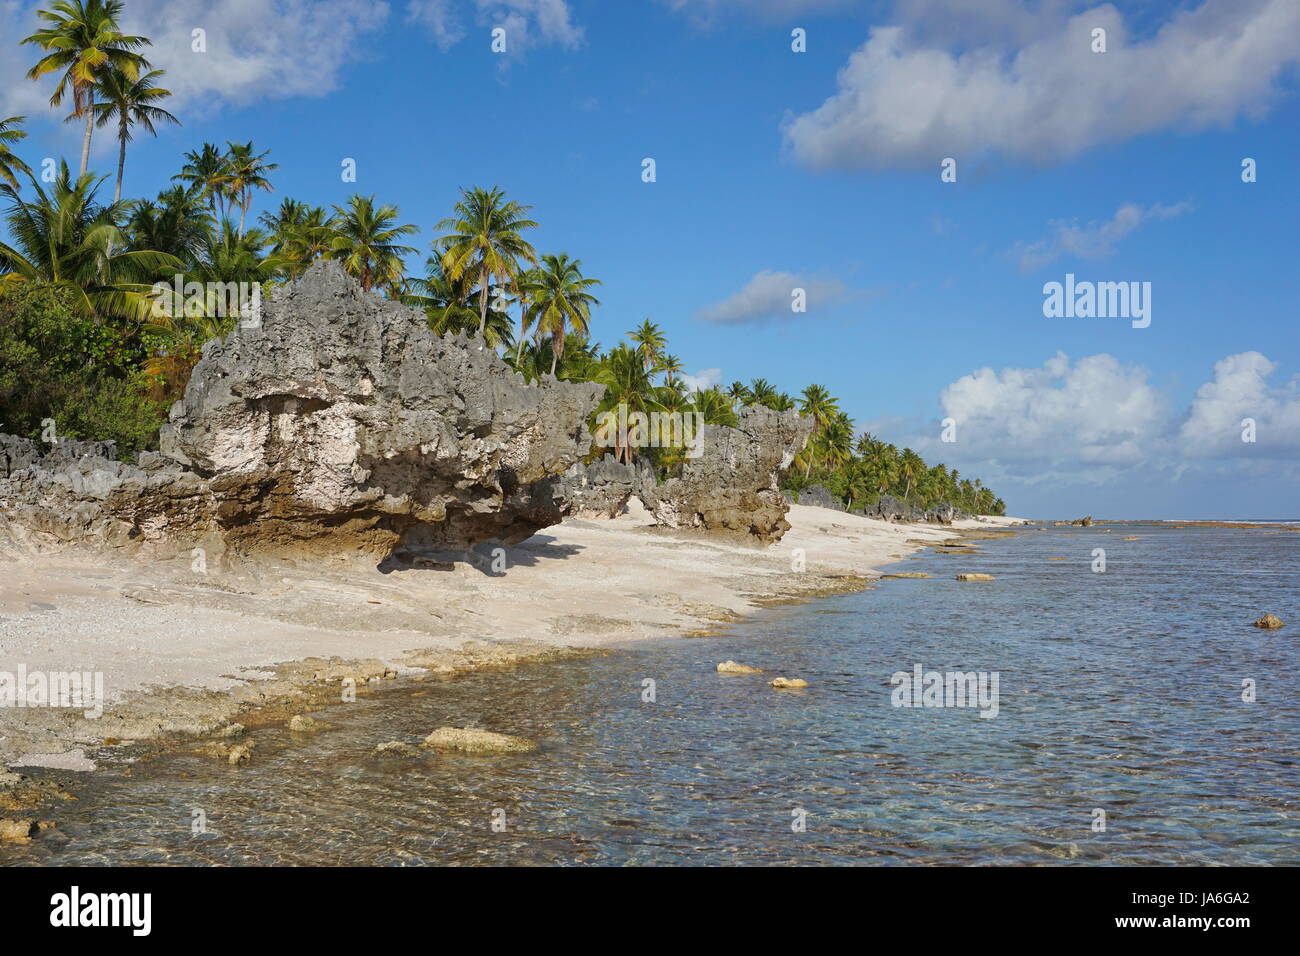 Atoll Tikehau Küstenlandschaft mit Kokospalmen und ausgewaschene Felsen am Meeresufer, Tuamotus Archipel, Französisch-Polynesien, Pazifischer Ozean Stockfoto